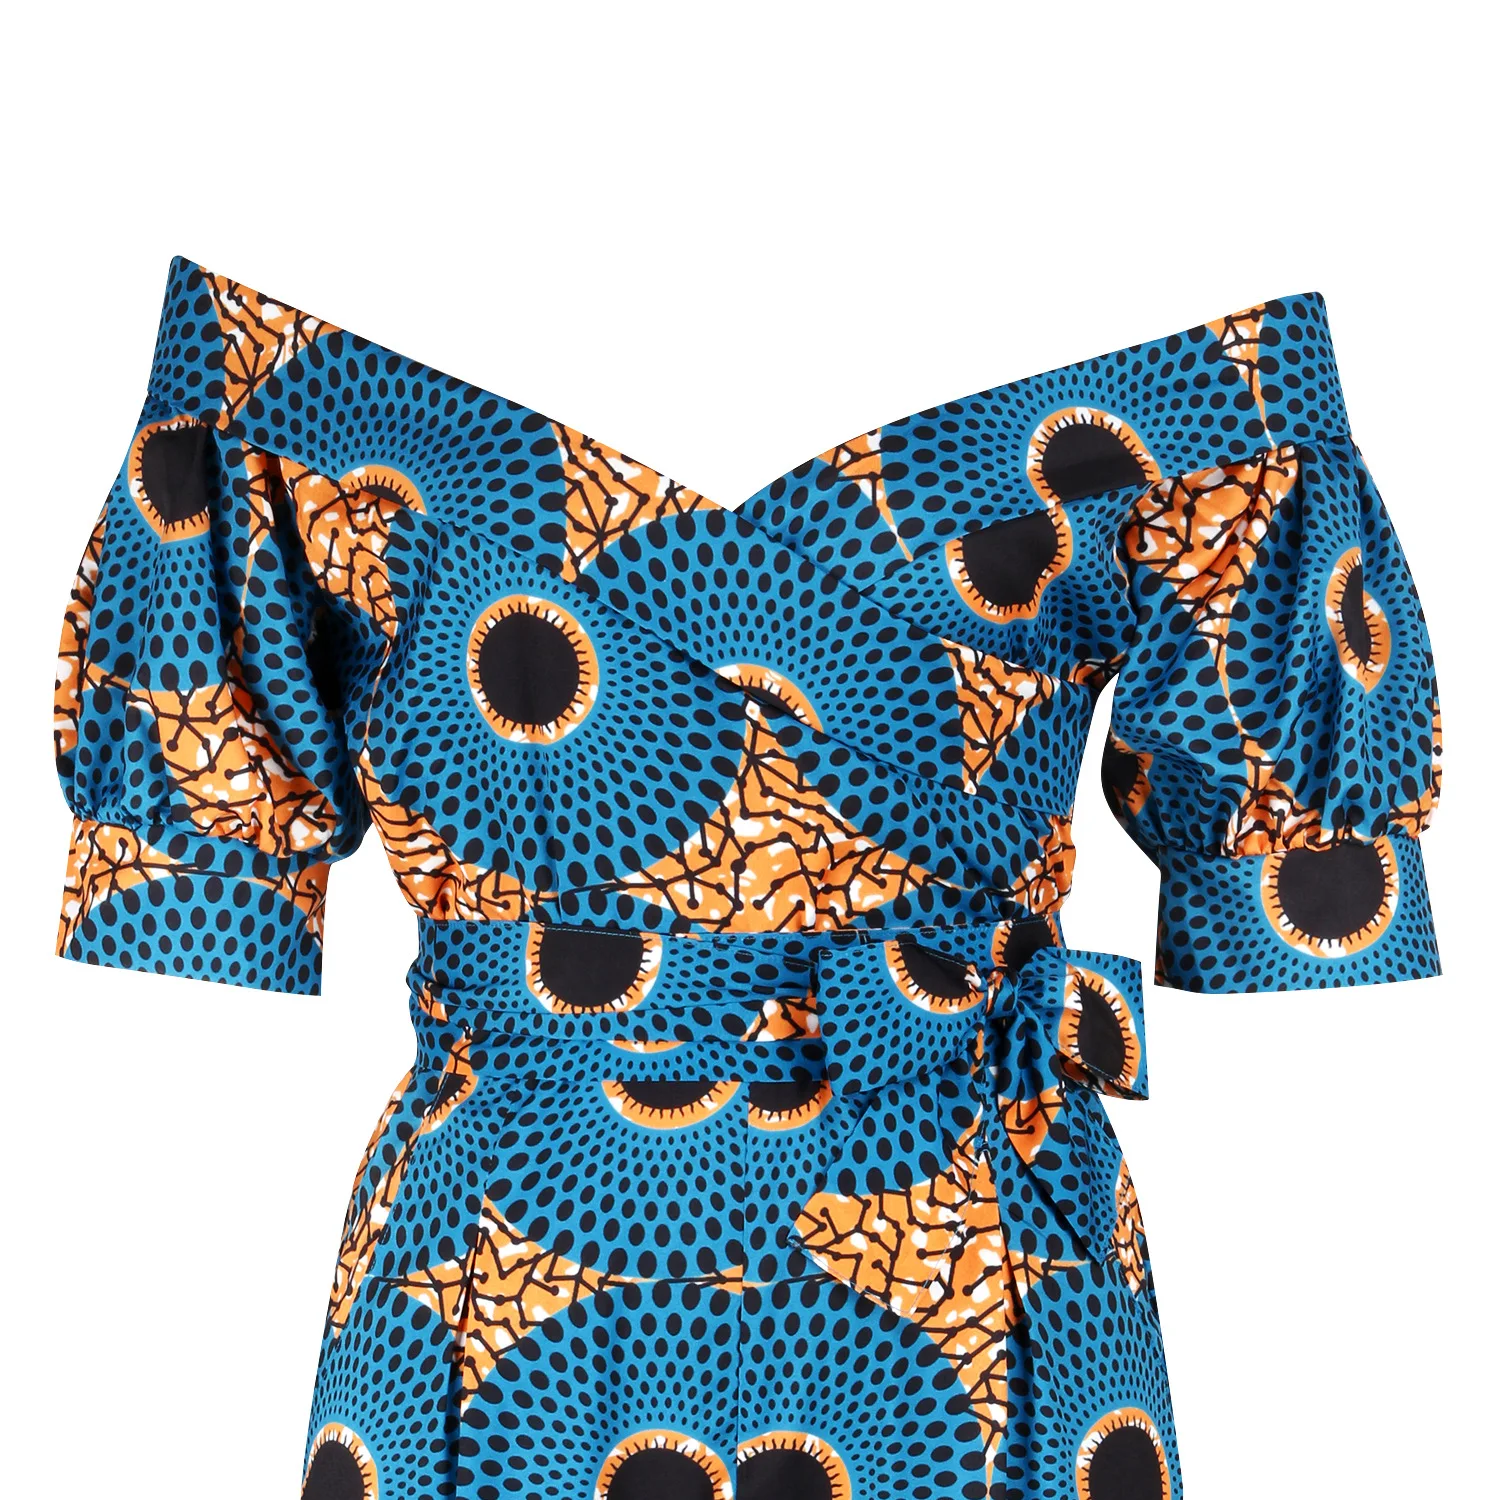 
YIZHIQIU African clothing modern dashiki dress for dashiki women 